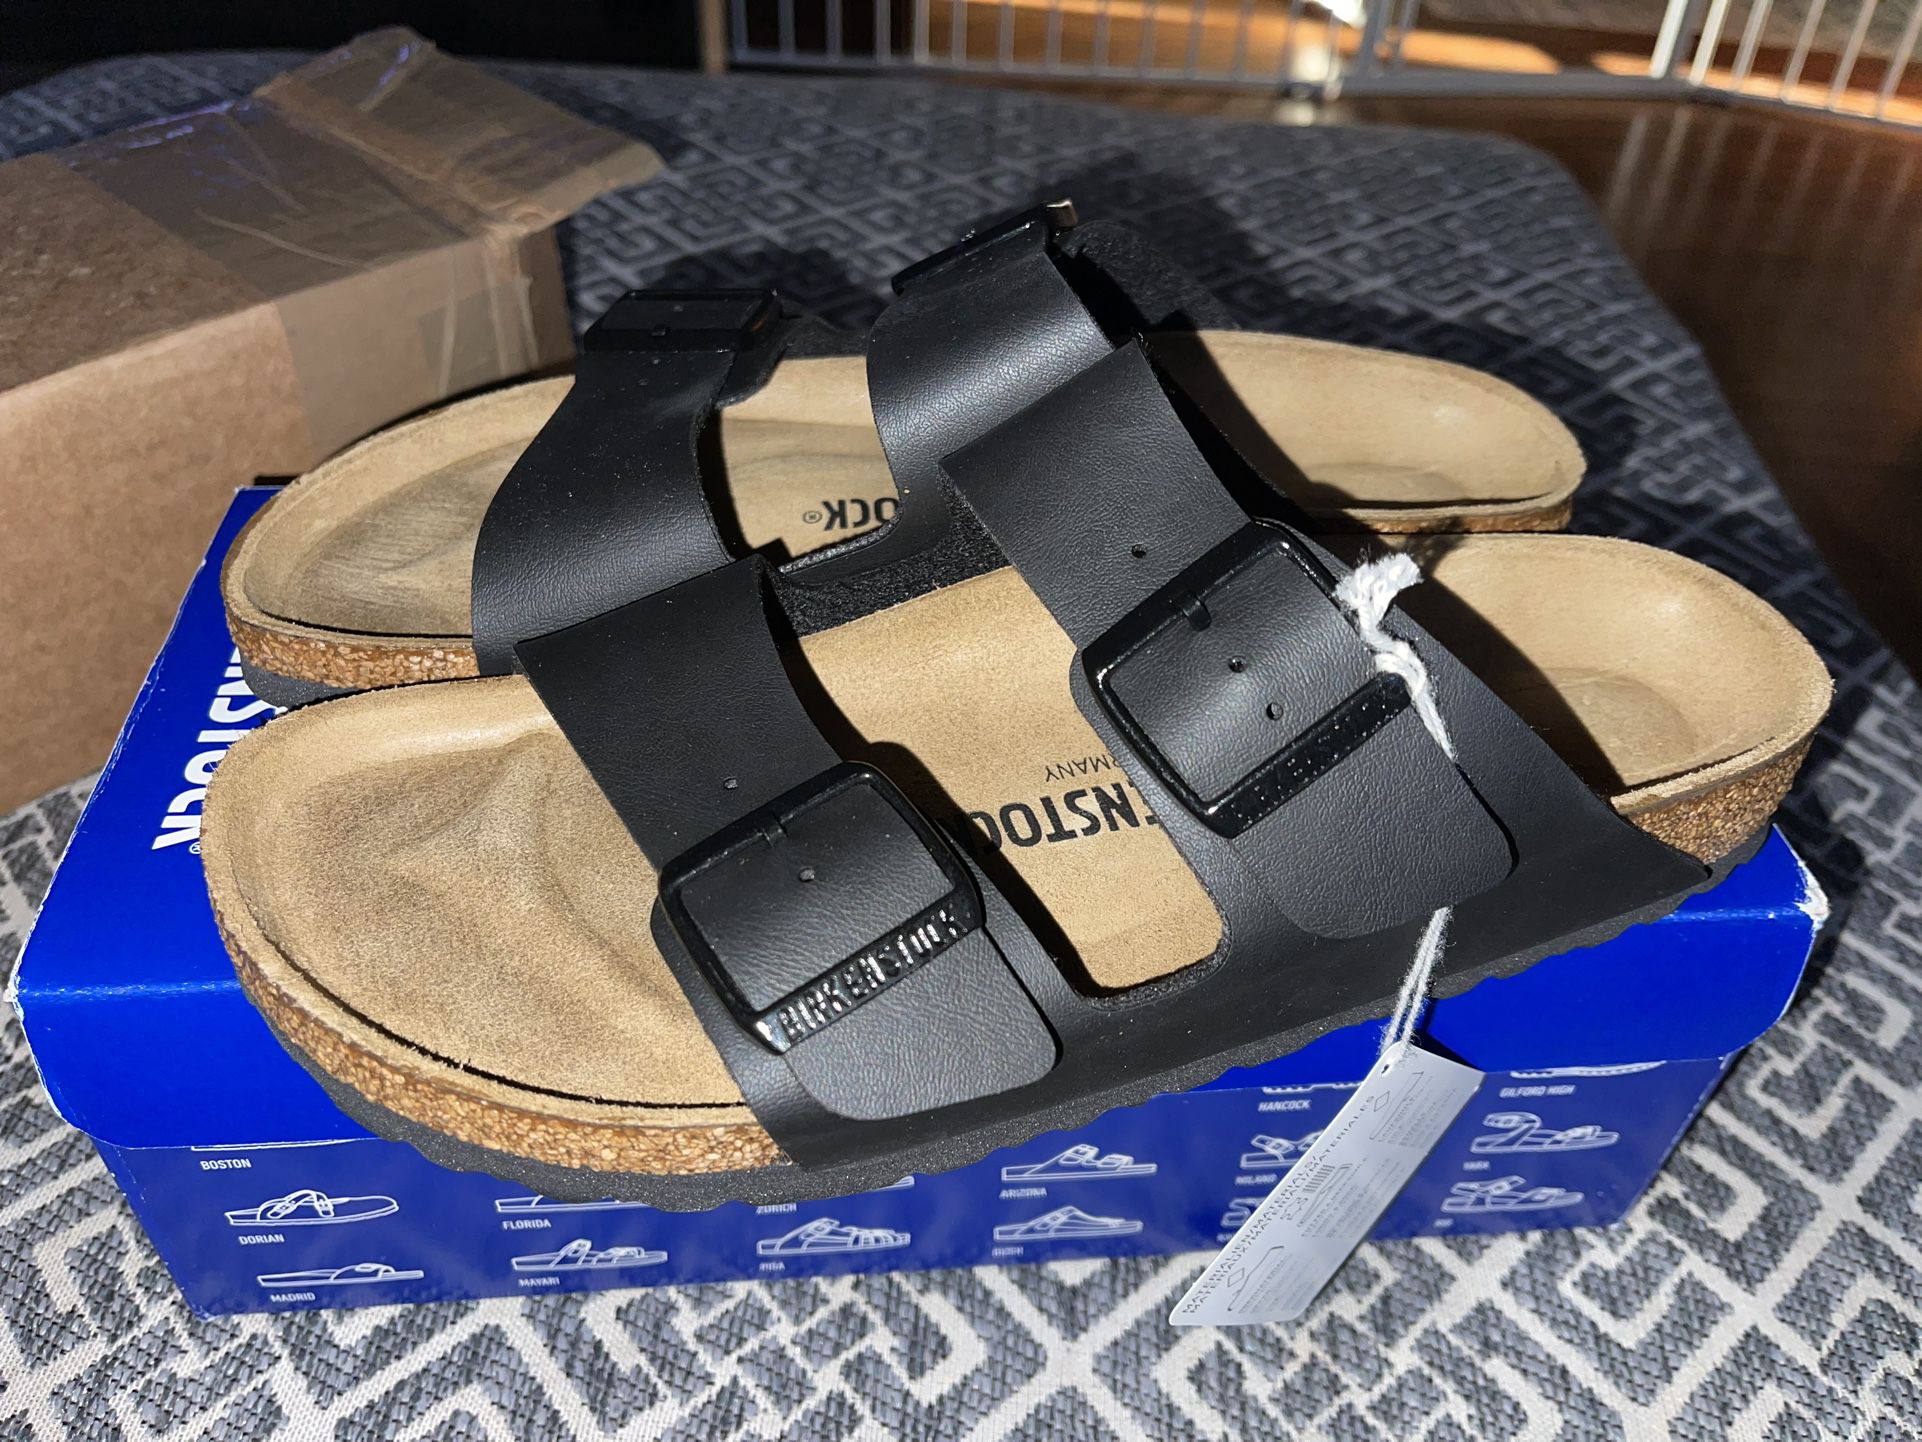 New Birkenstock Arizona Sandals